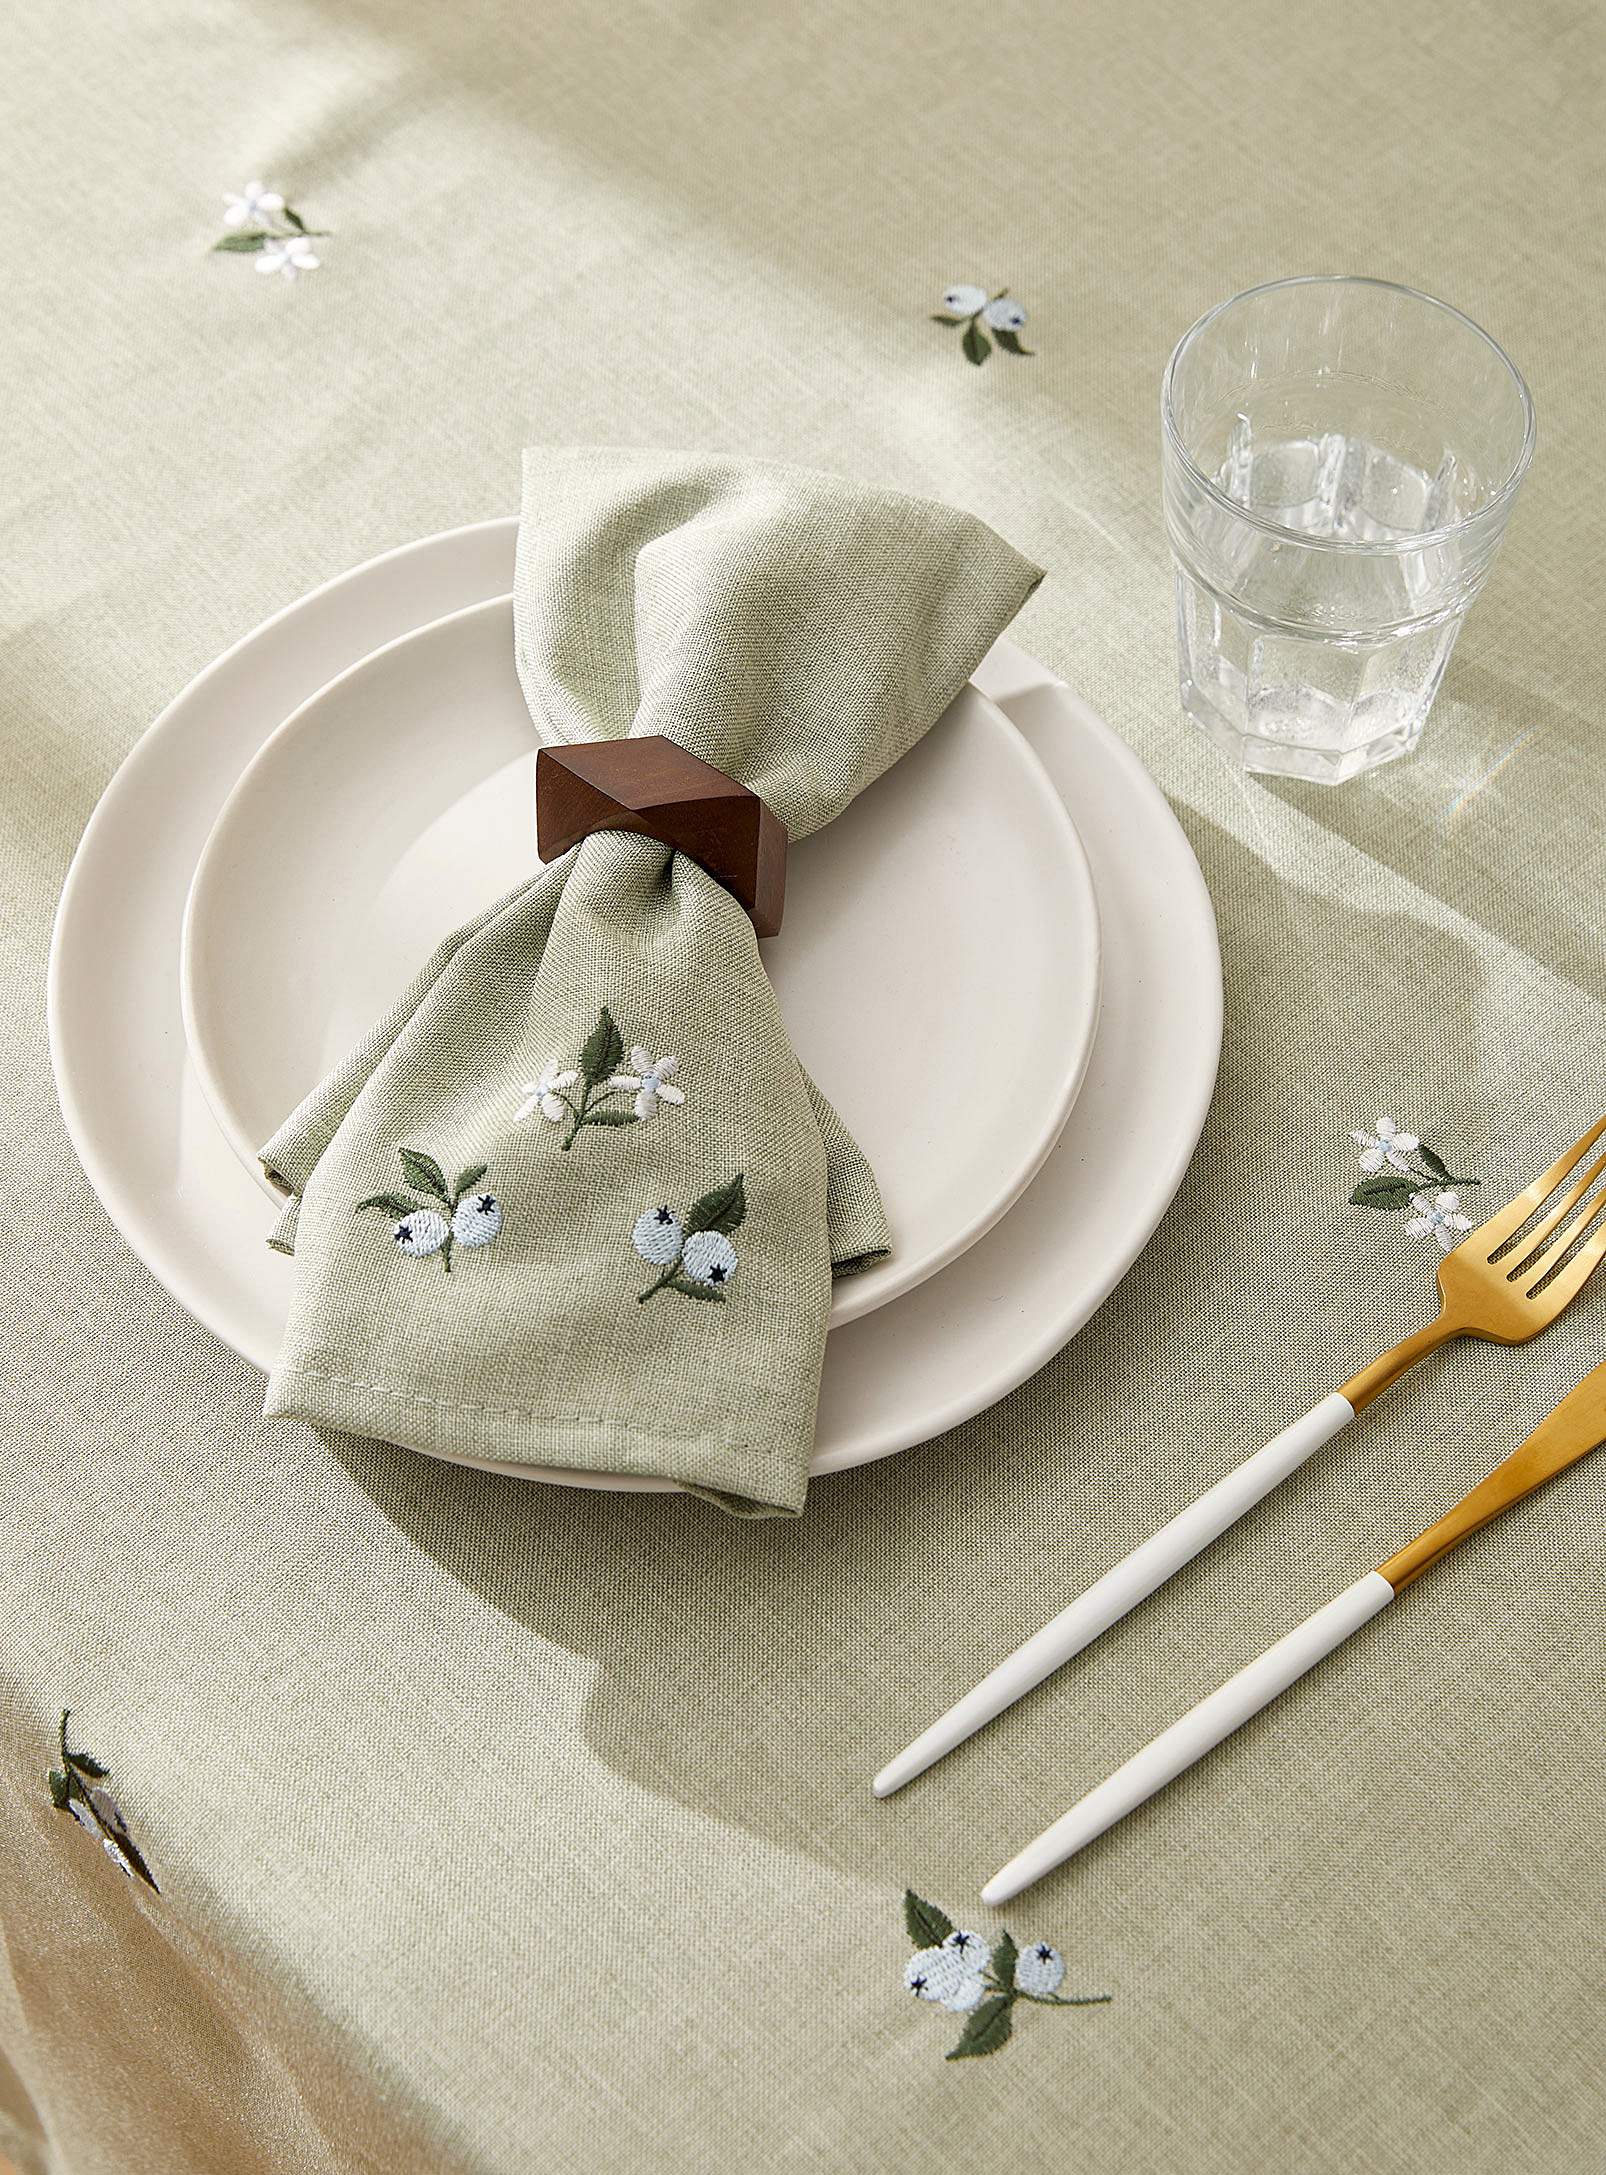 Simons Maison - La serviette de table bleuets brodés